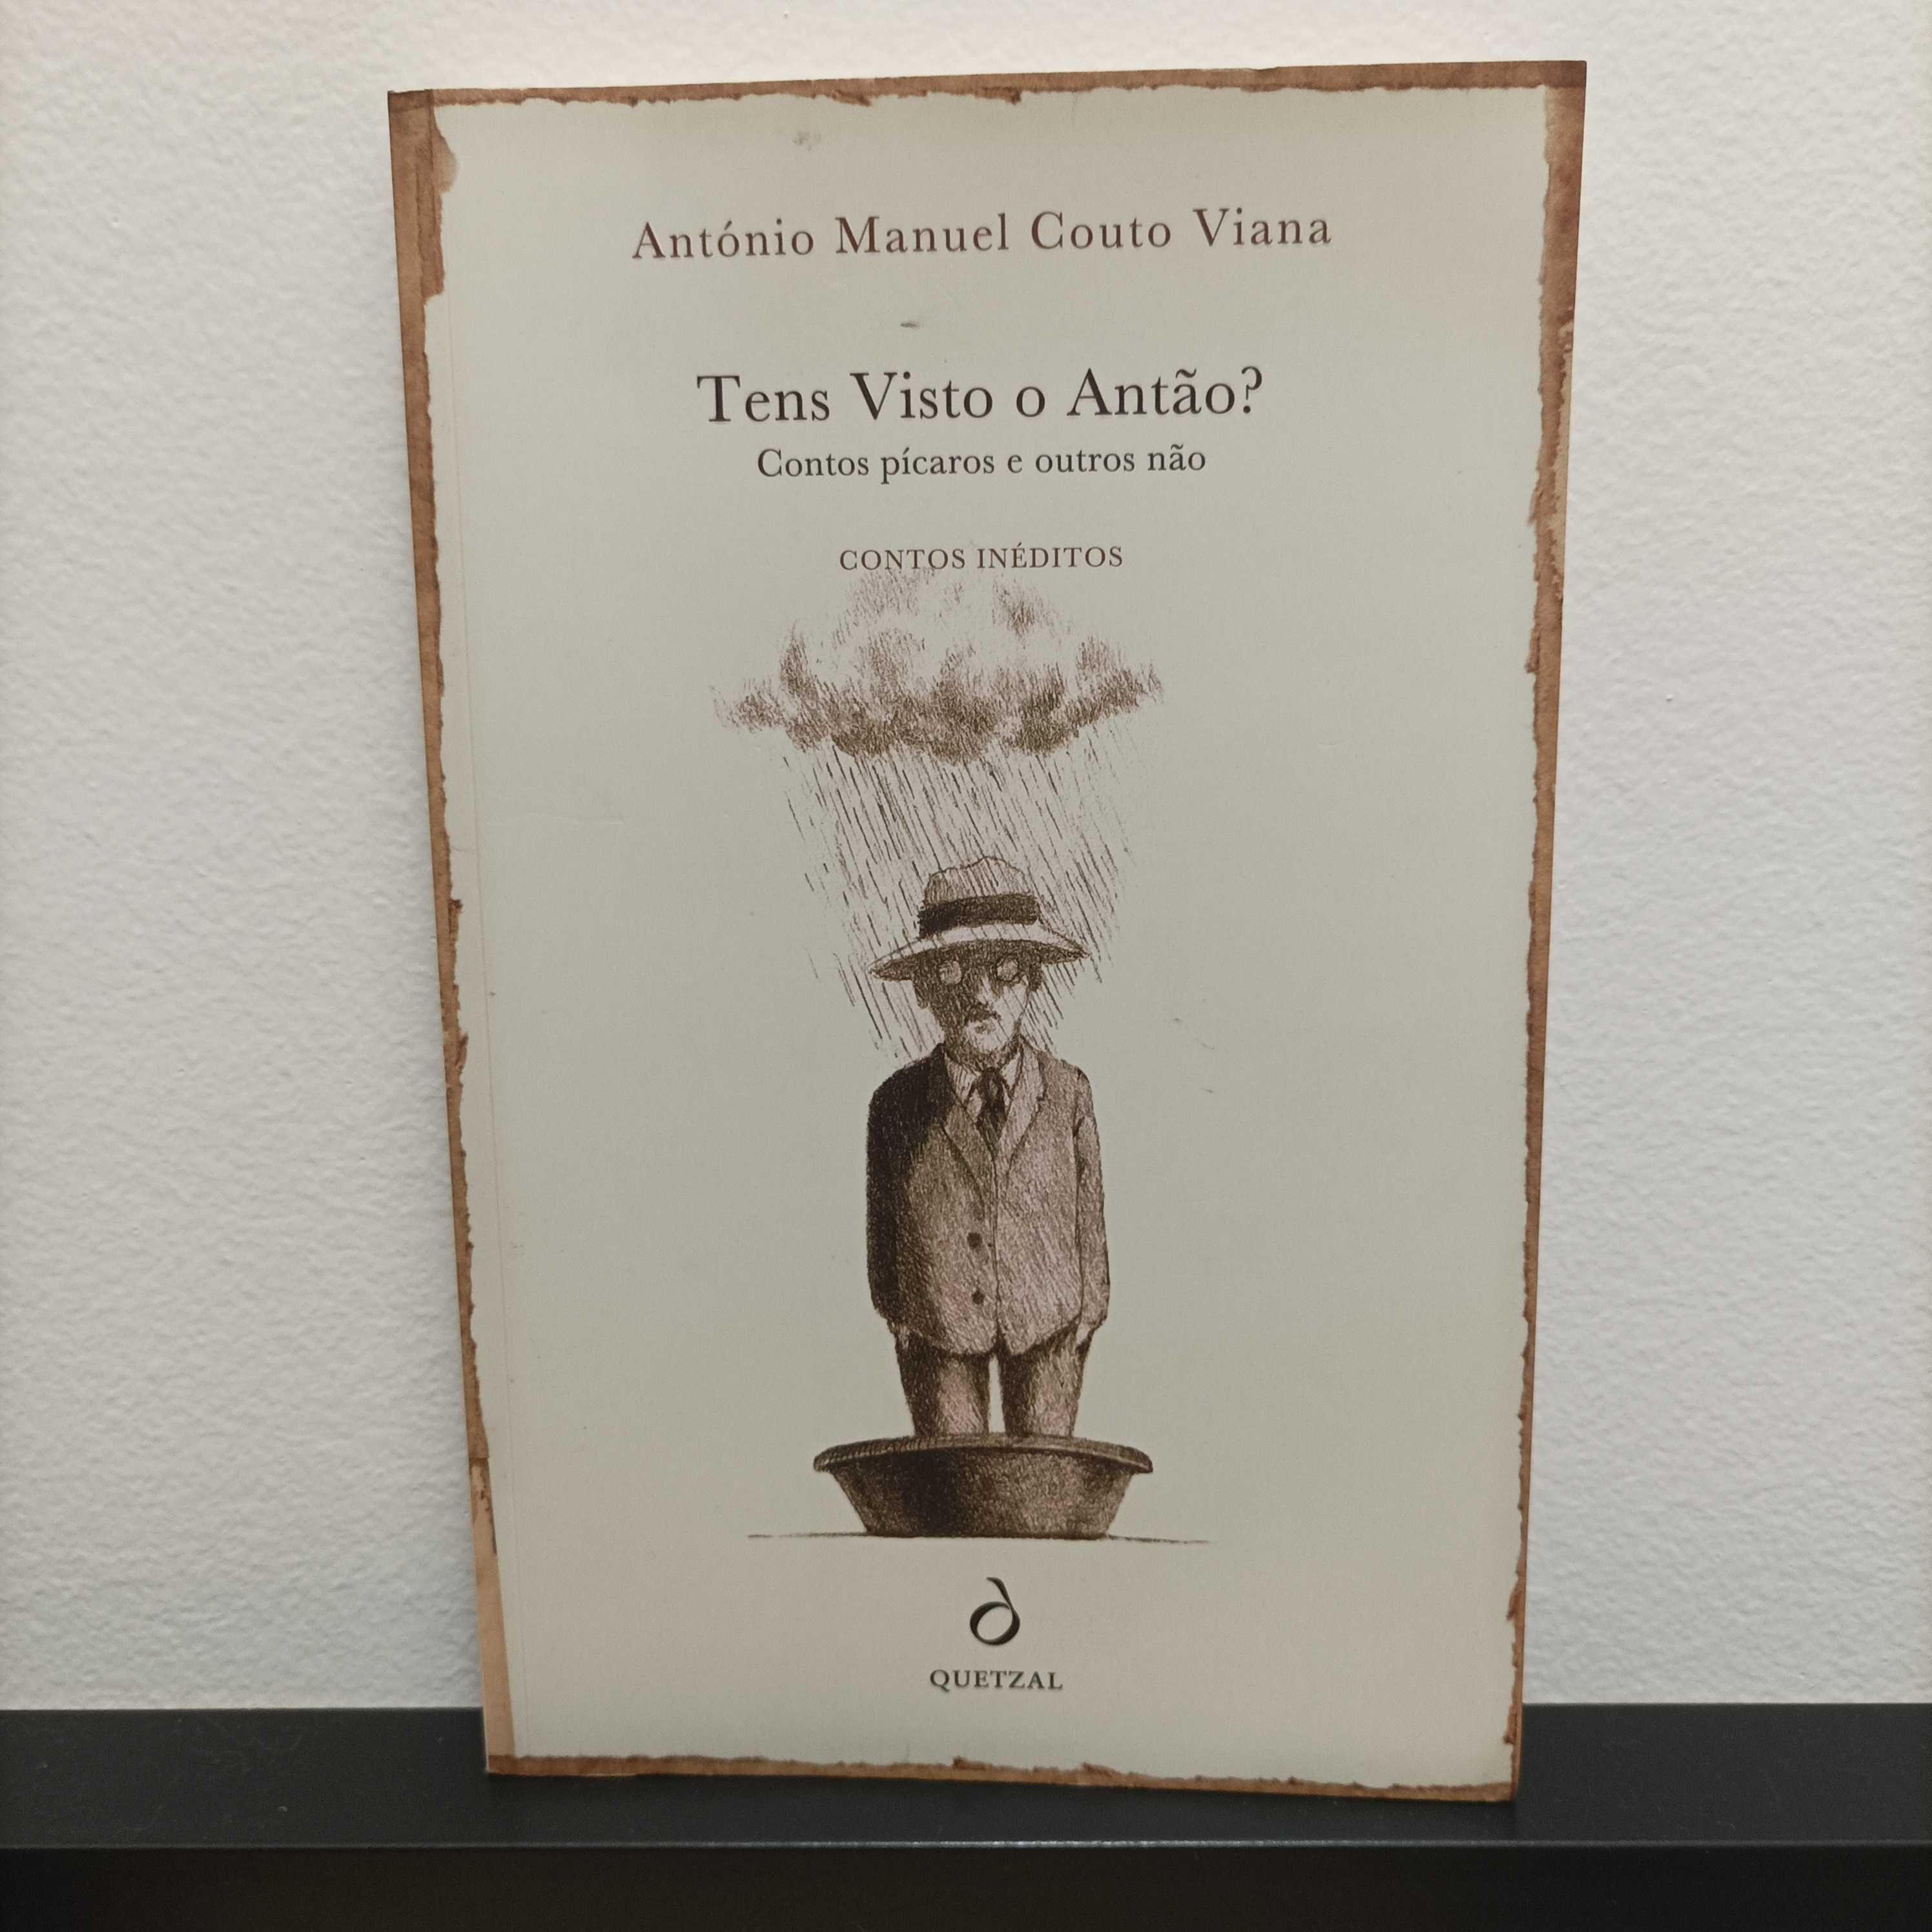 Livro "Tens visto o antão? Contos" de António Manuel Couto Viana